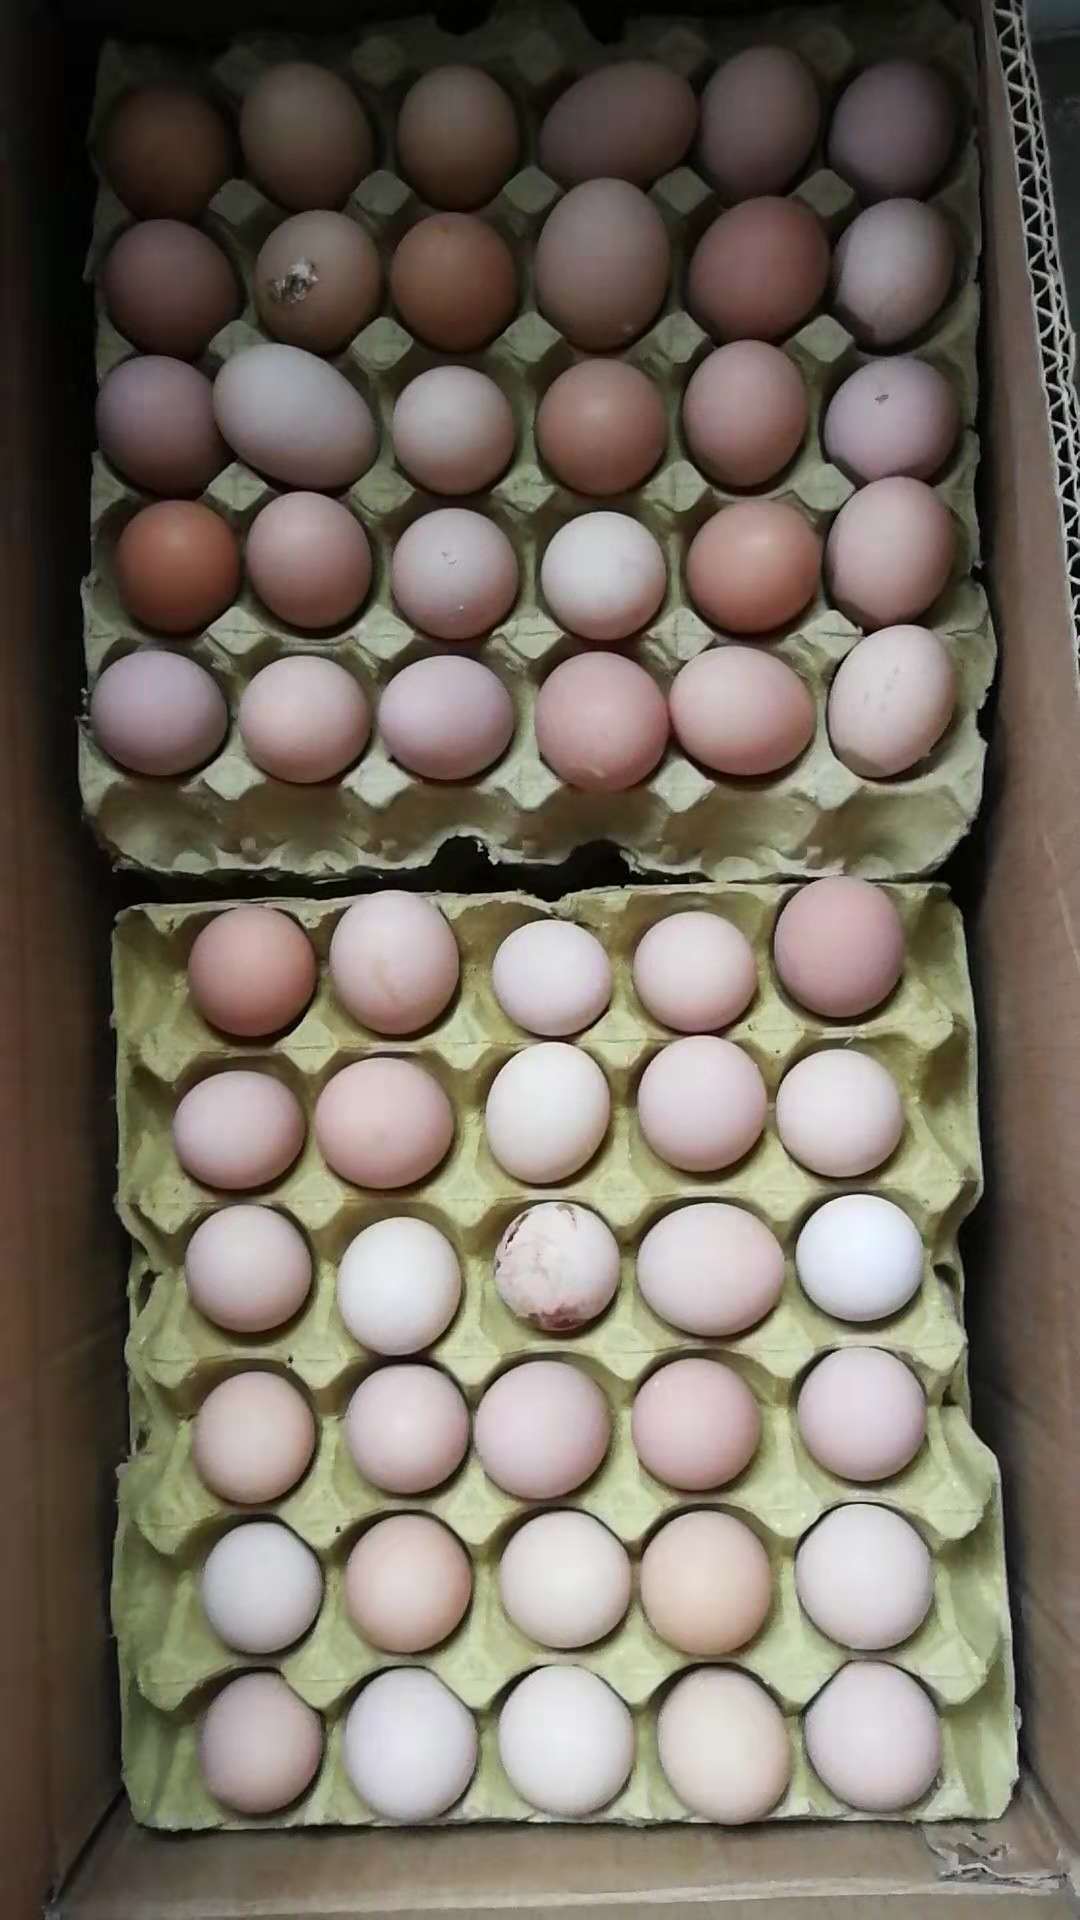 种蛋 皖南种蛋厂家 皖南种鸡蛋报价 皖南种鸡蛋 皖南土鸡蛋批发 皖南土鸡蛋供应商 皖南种蛋直销 皖南种蛋价格 种蛋供应商